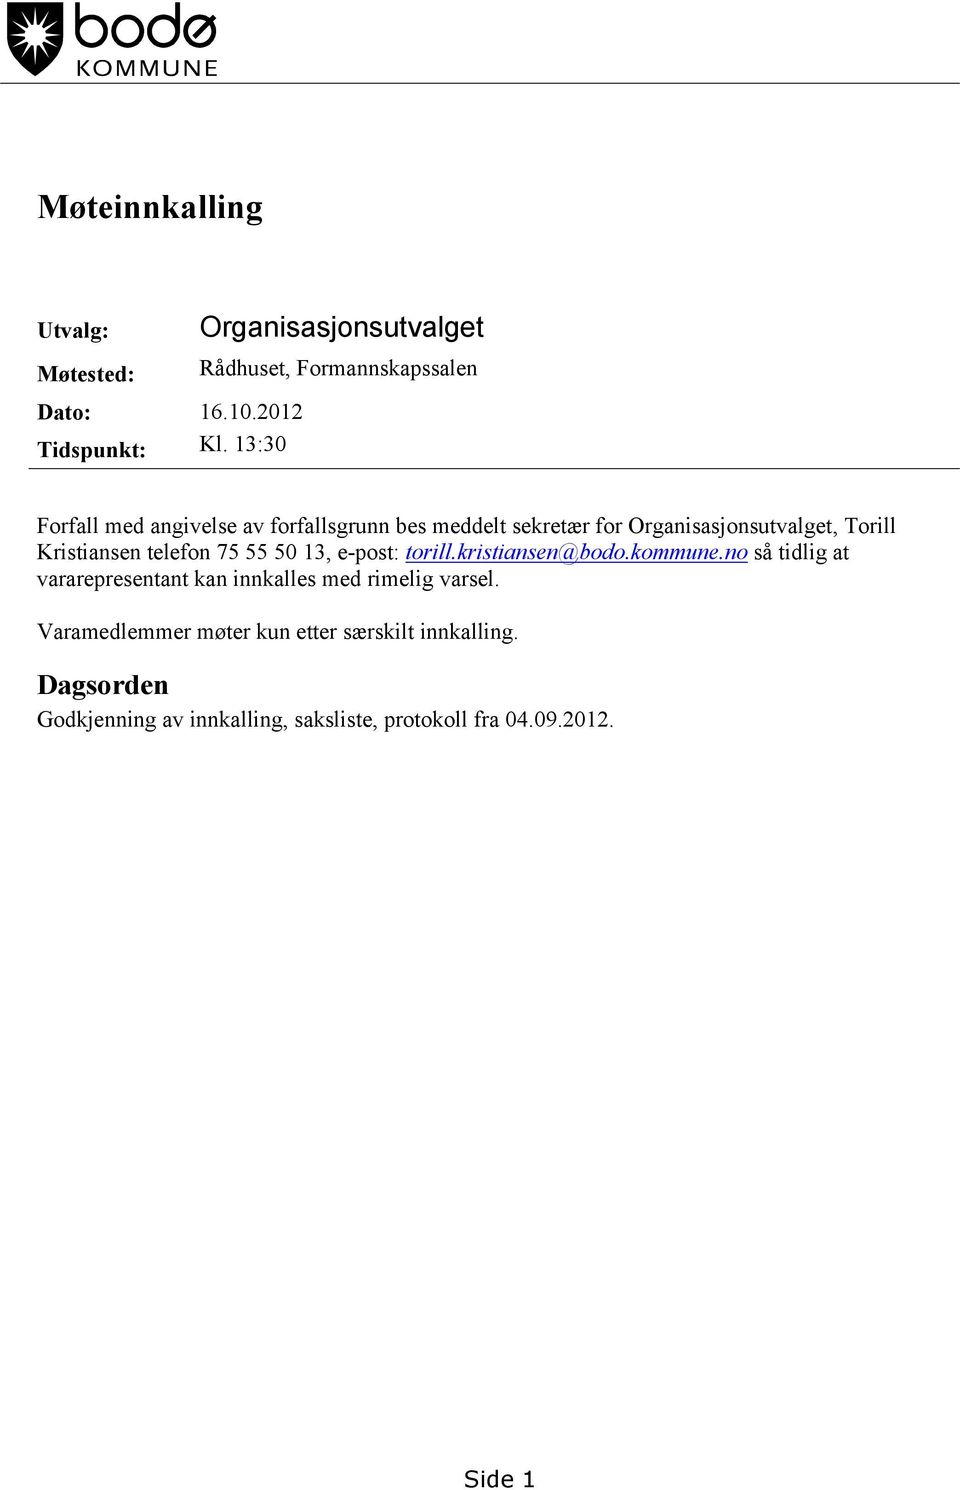 Organisasjonsutvalget, Torill Kristiansen telefon 75 55 50 13, e-post: torill.kristiansen@bodo.kommune.